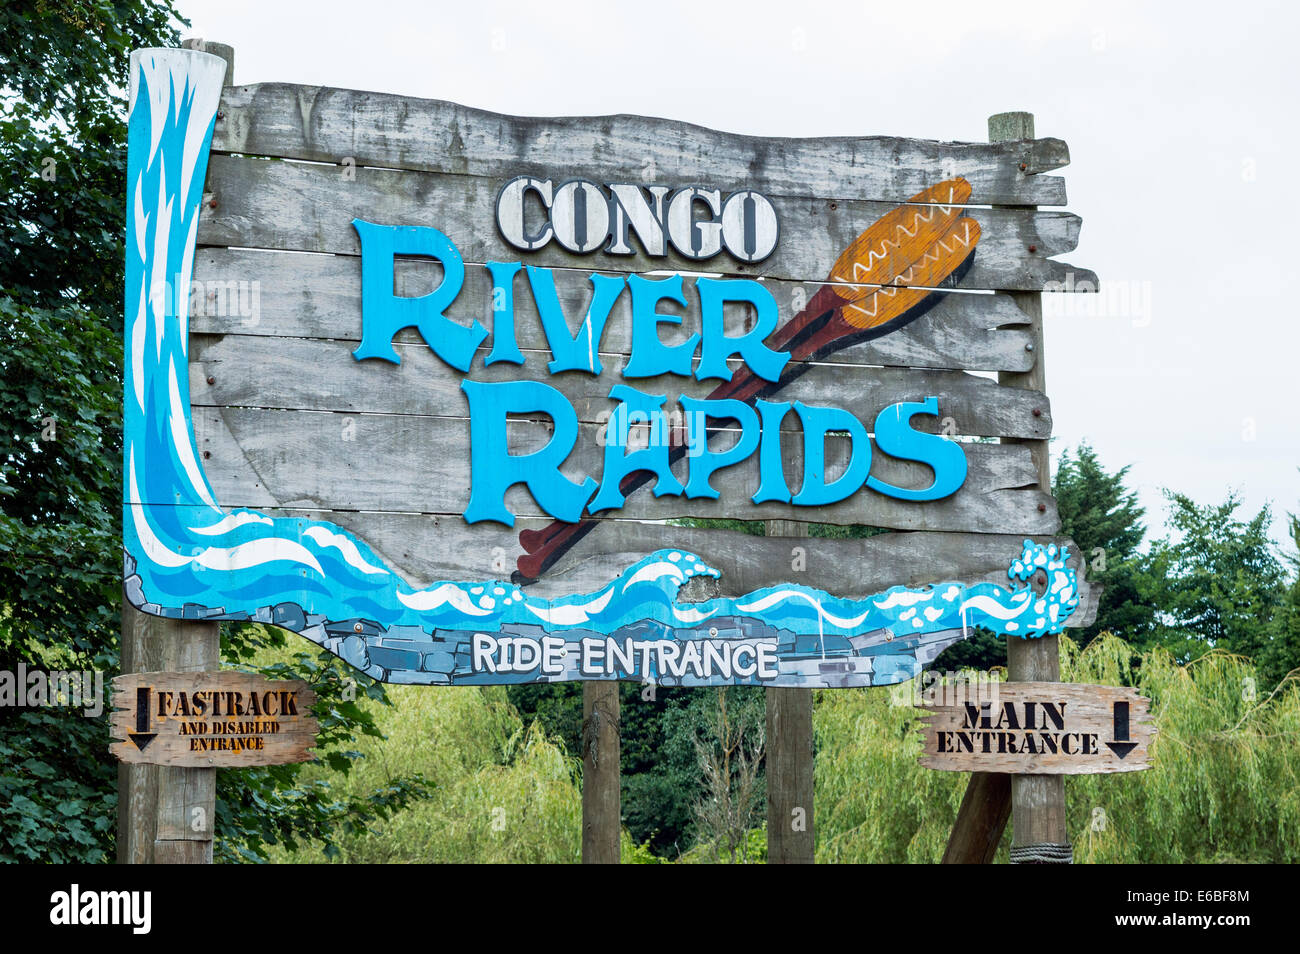 Congo River Rapids ride signe en parc à thème Alton Towers Resort Banque D'Images